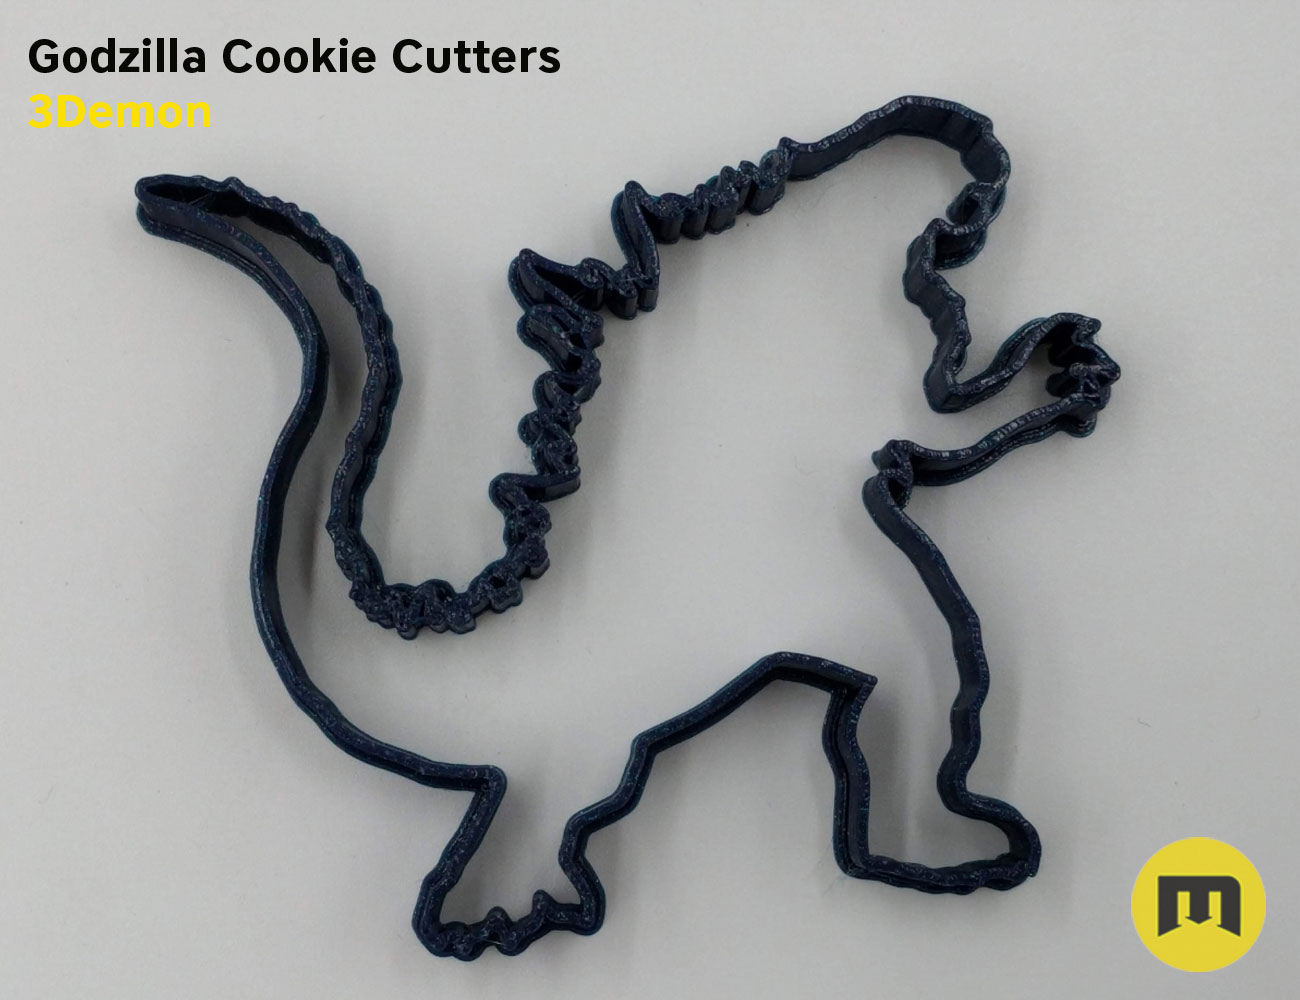 Godzilla Cookie Cutters stl by 3Demon-print1